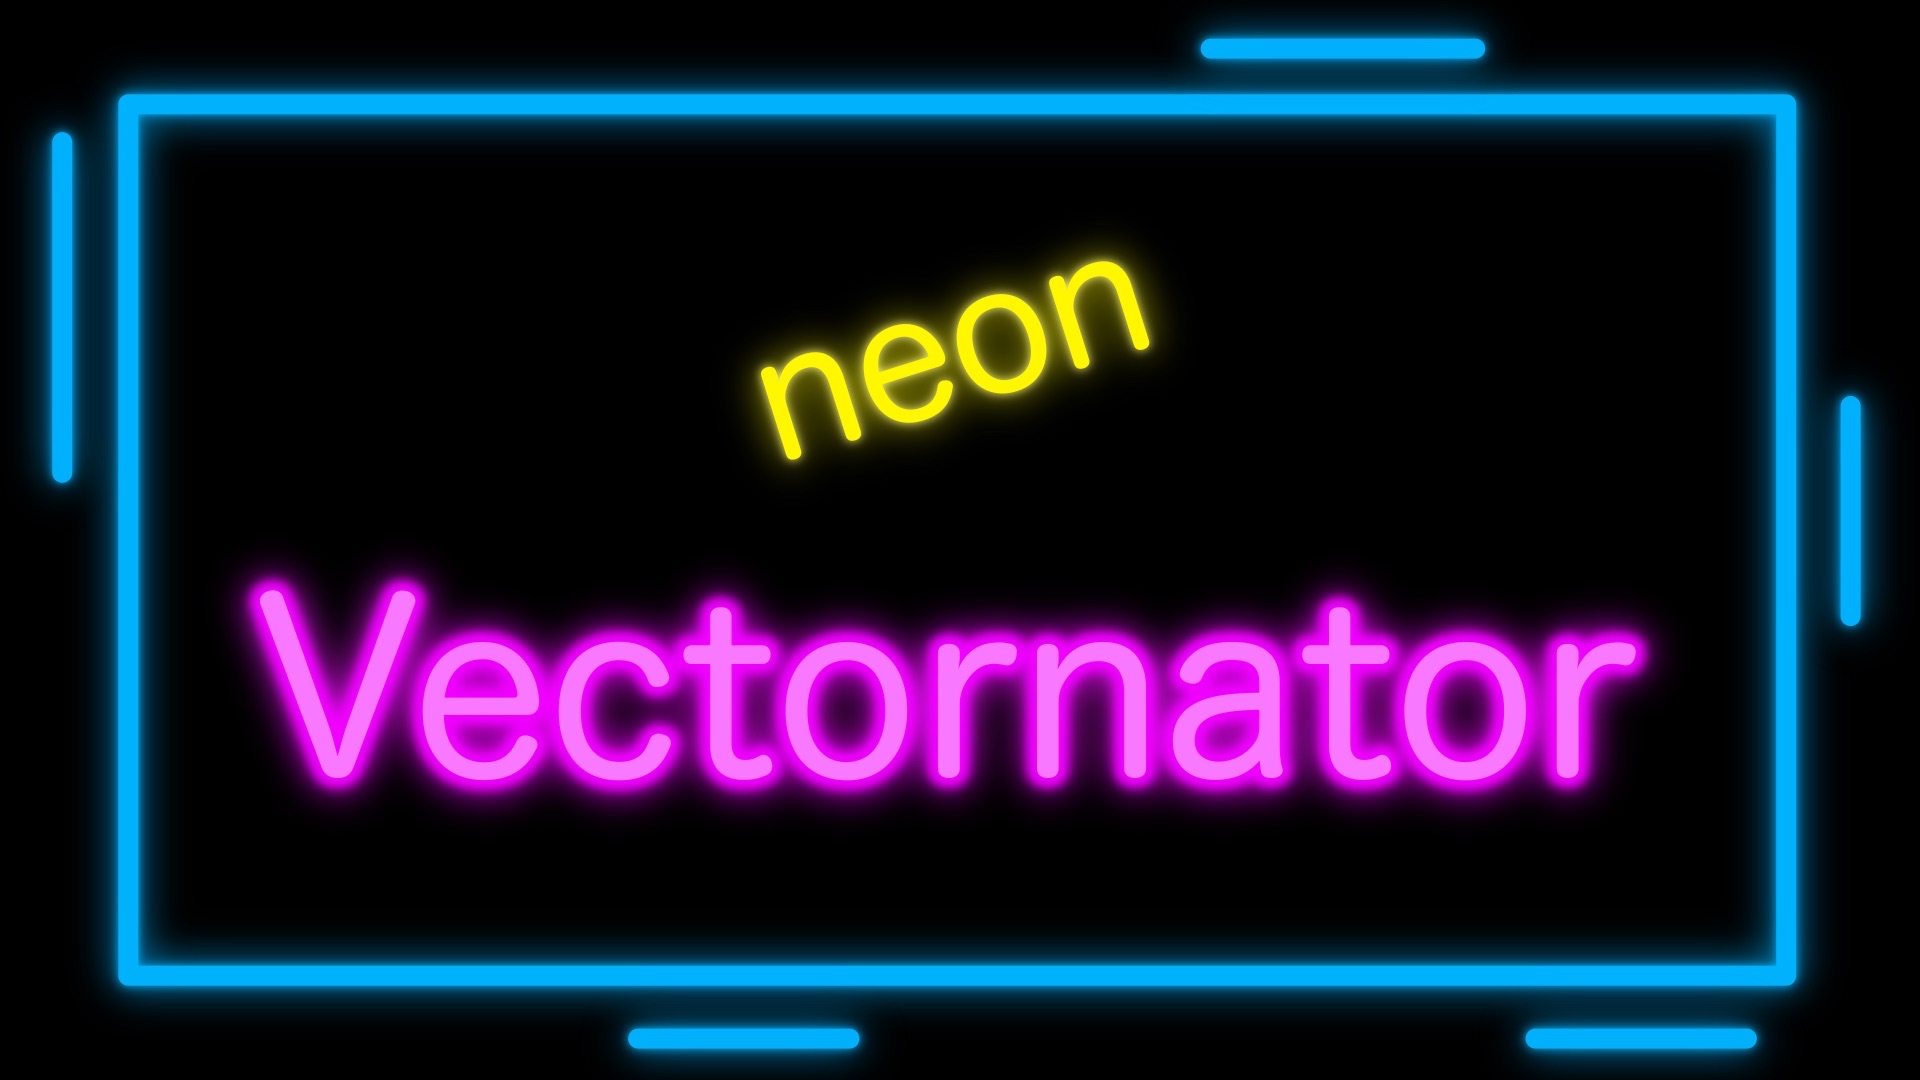 Vectornatorでネオンのように発光している文字を描く方法